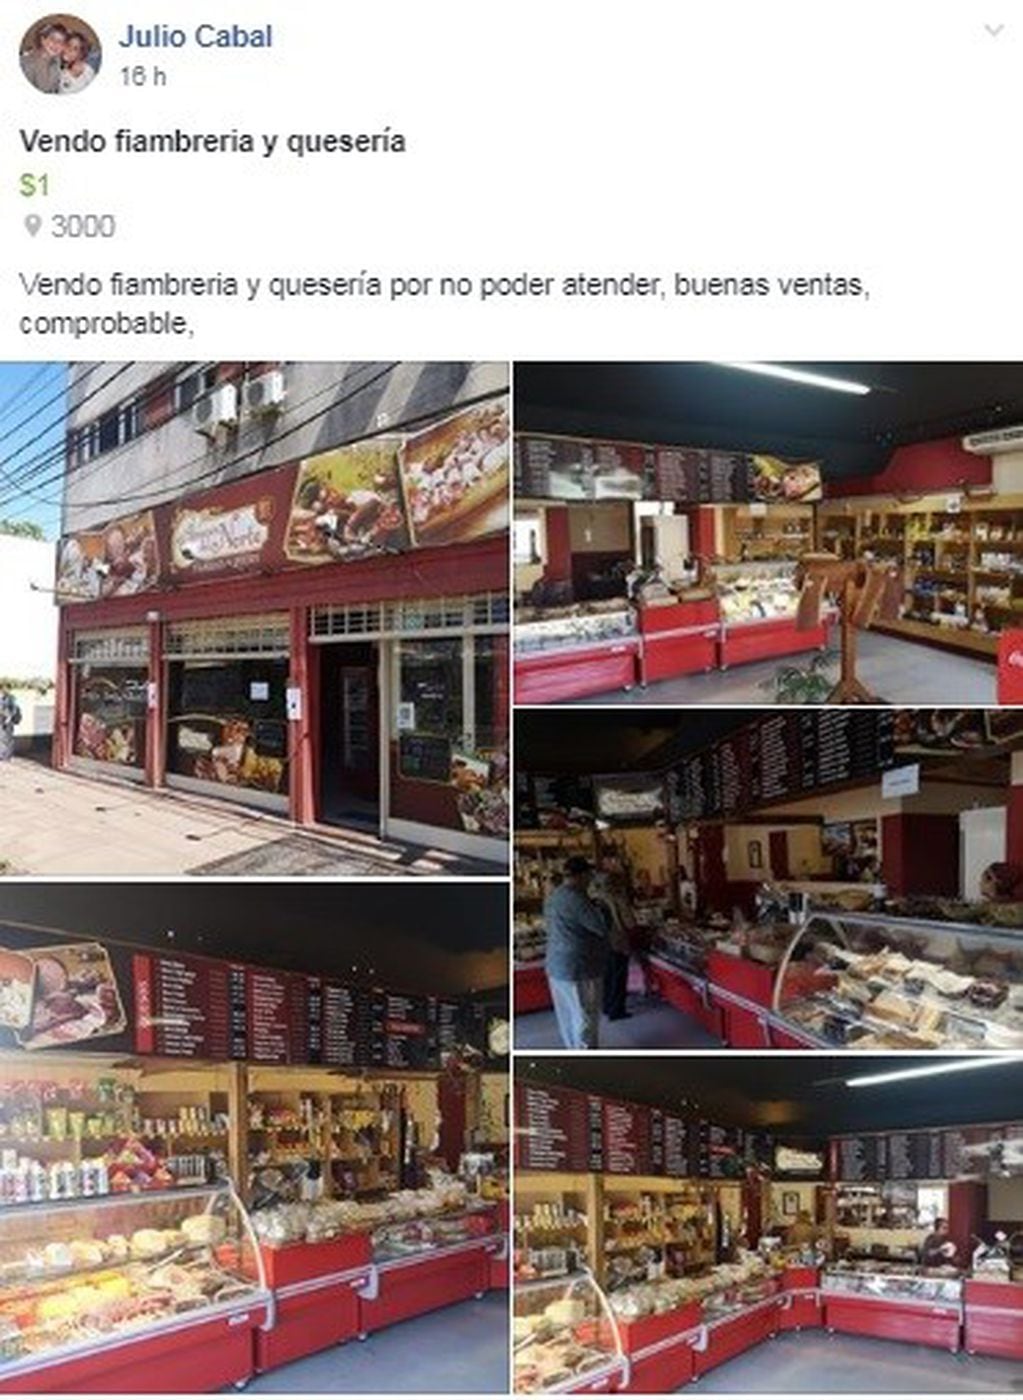 Fiambrería "Almacén del Norte", comercio de Julio Cabal. (Facebook)